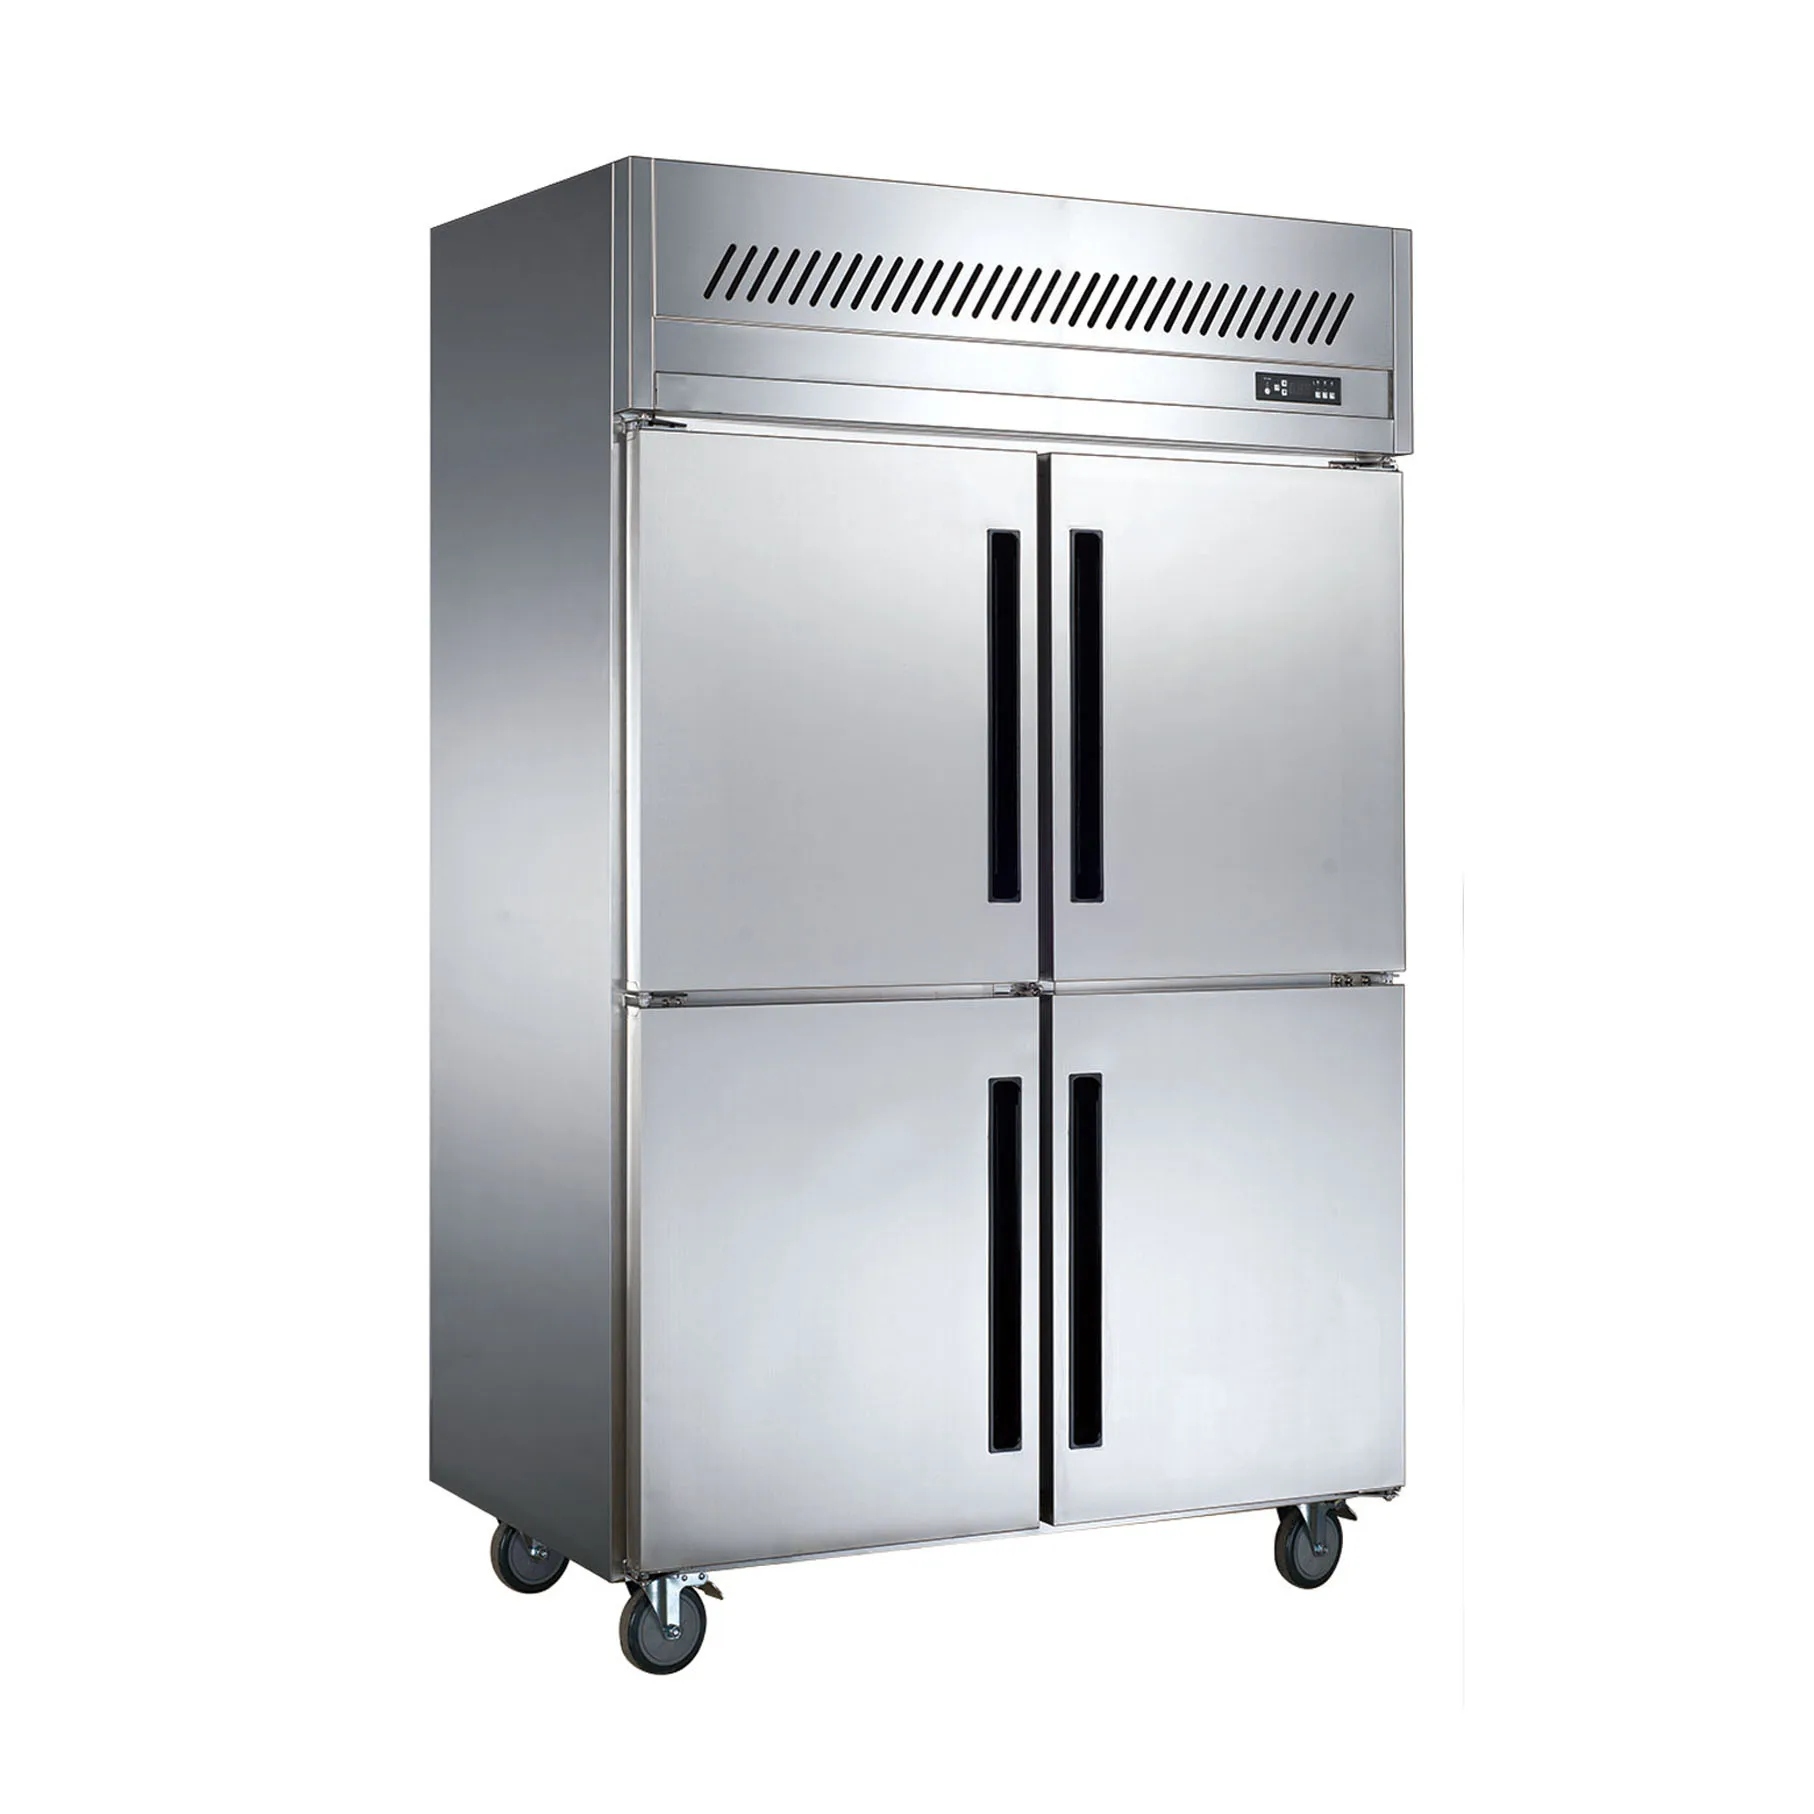 Холодильное тепловое оборудование. Aceline холодильник 4 дверный. Промышленный холодильник. Холодильник производственный. Промышленный холодильник вертикальный.